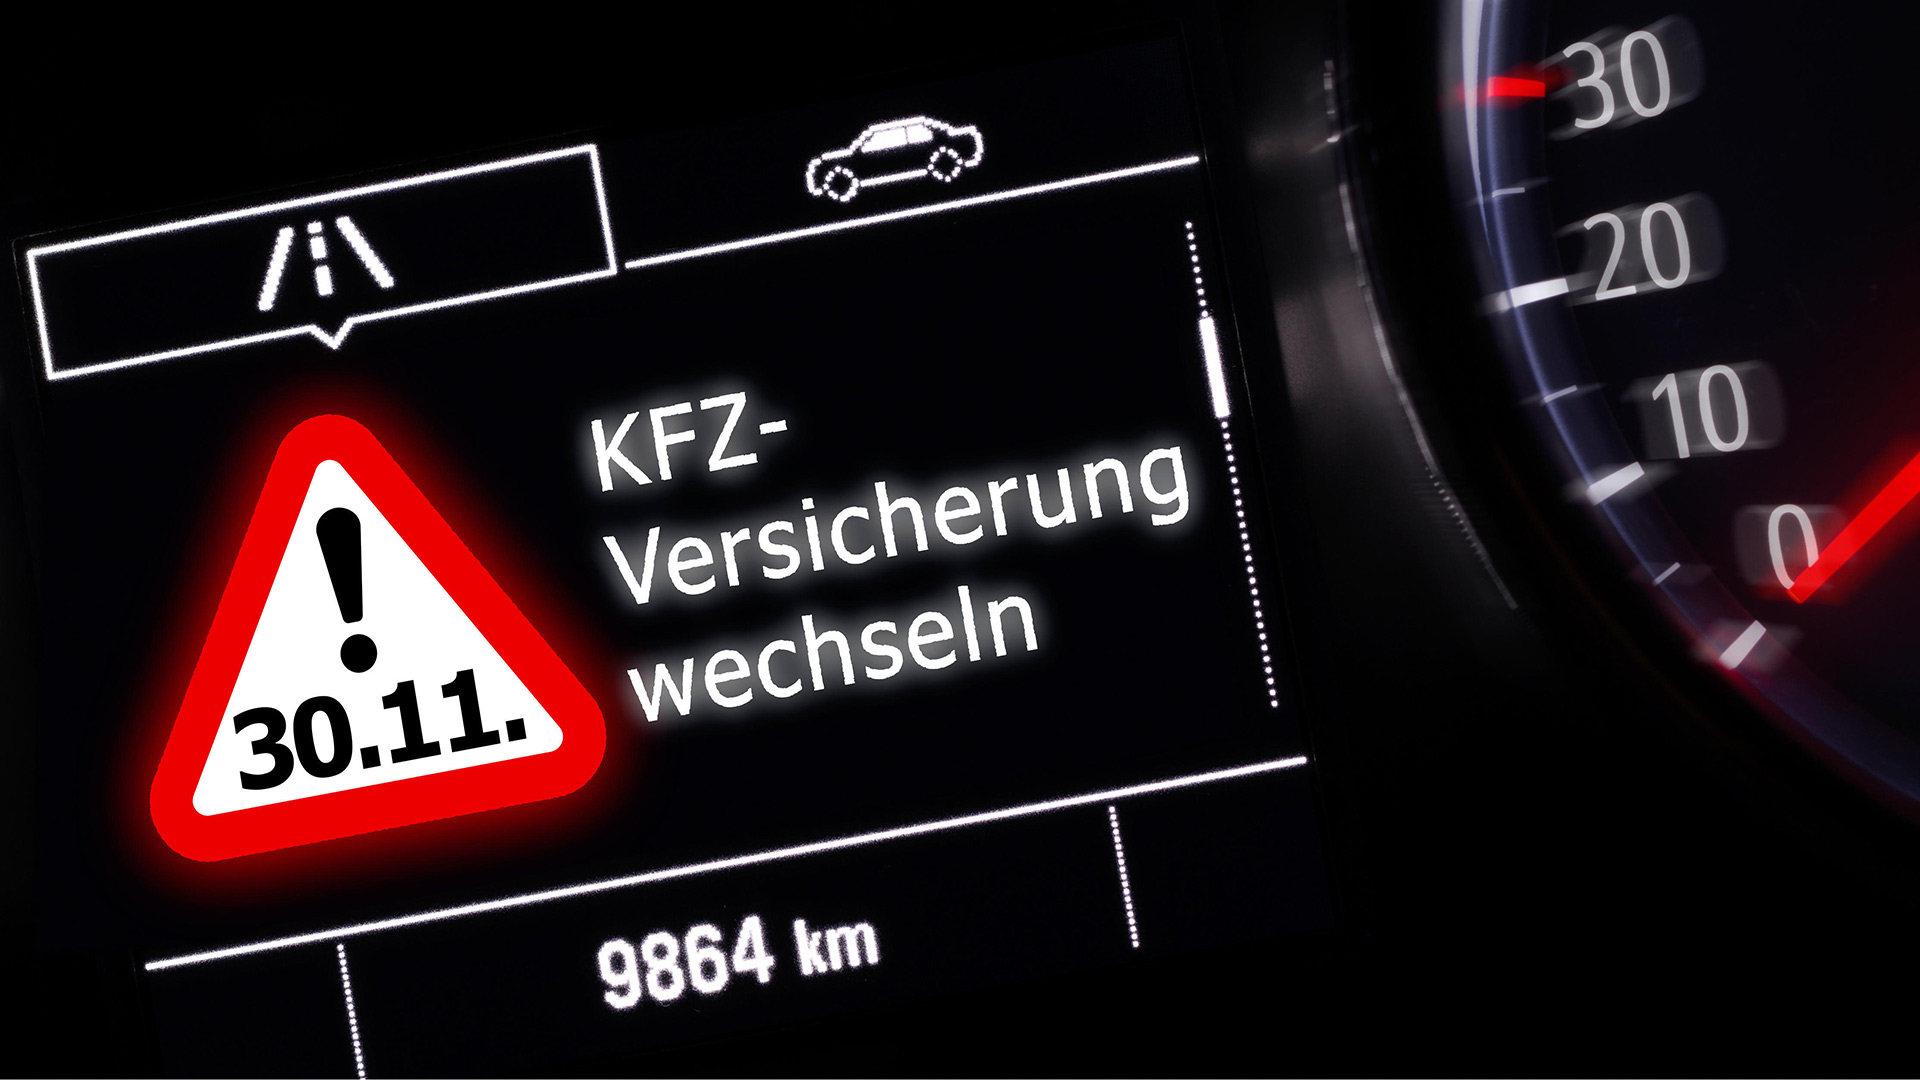 Digitalanzeige im Fahrzeugdisplay mit Erinnerung an Versicherungswechsel | picture alliance / Zoonar